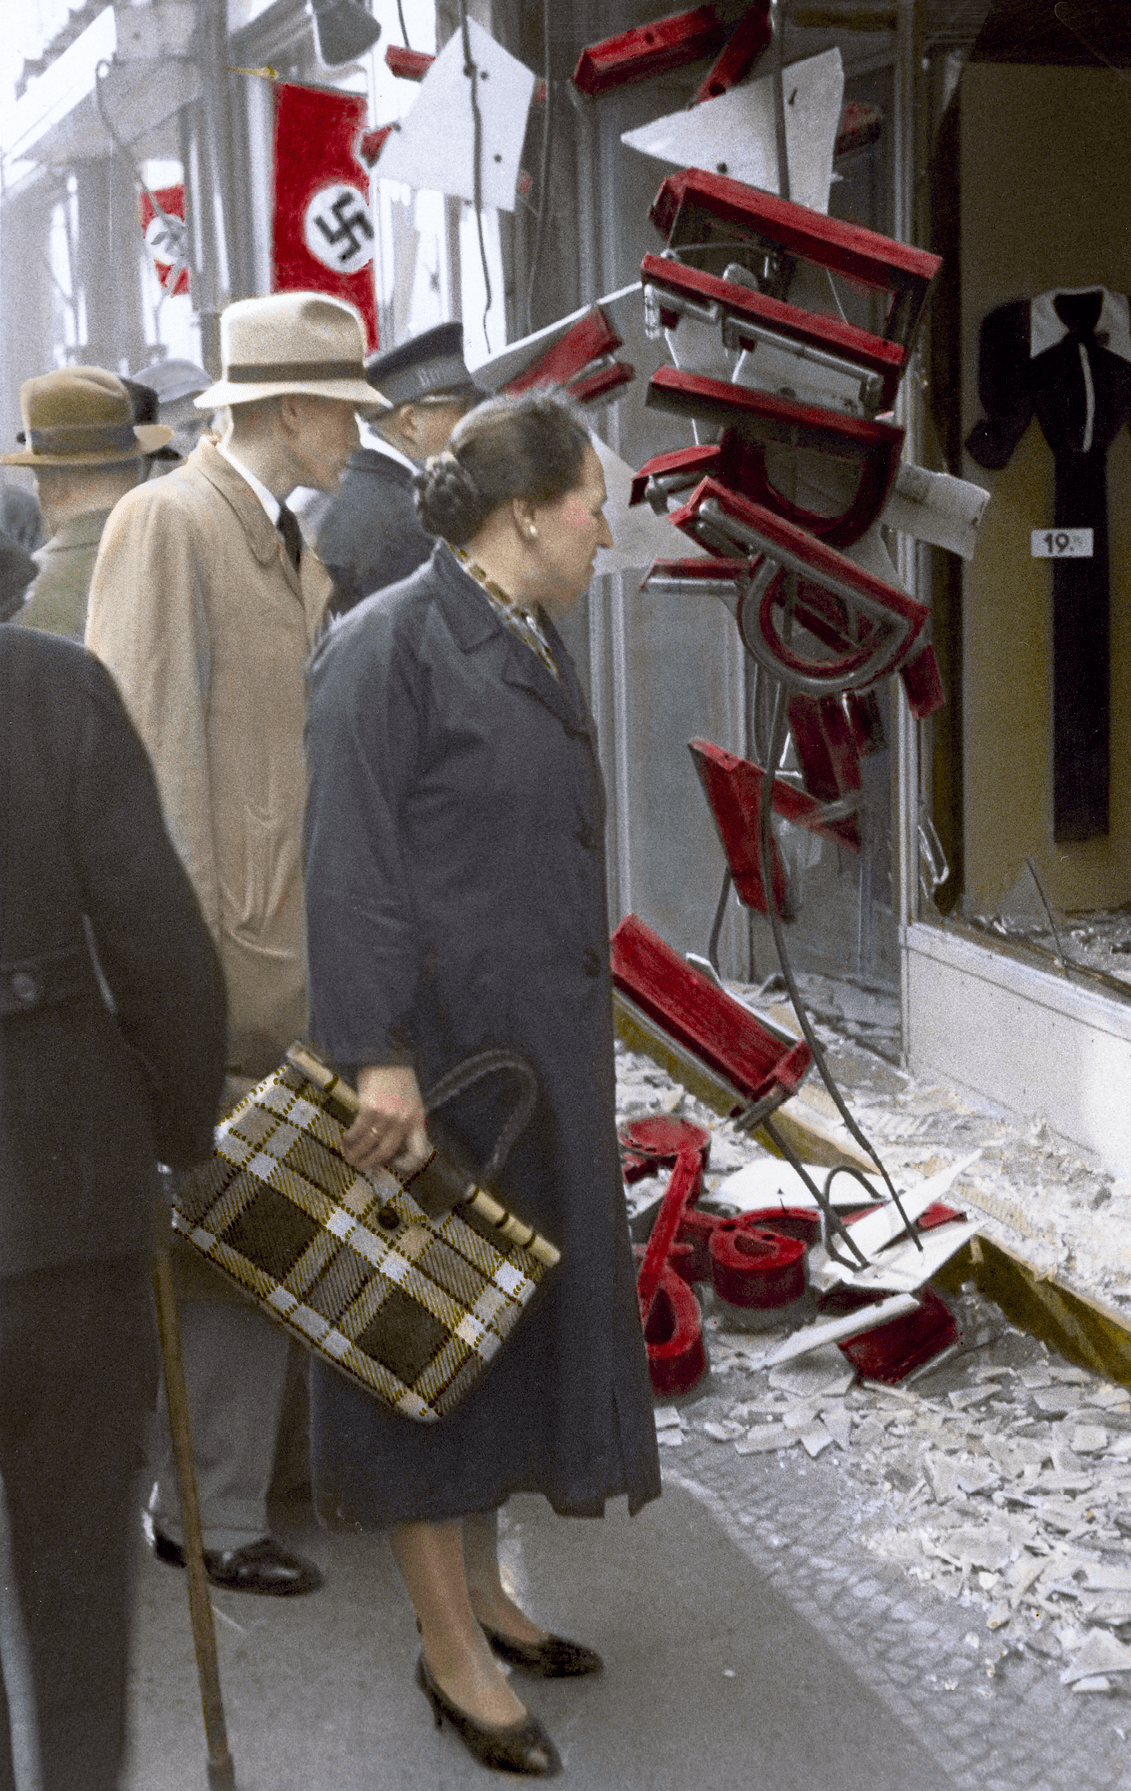 Boutique juive pillée et détruite à Berlin, 9 novembre 1938,
photographie anonyme.